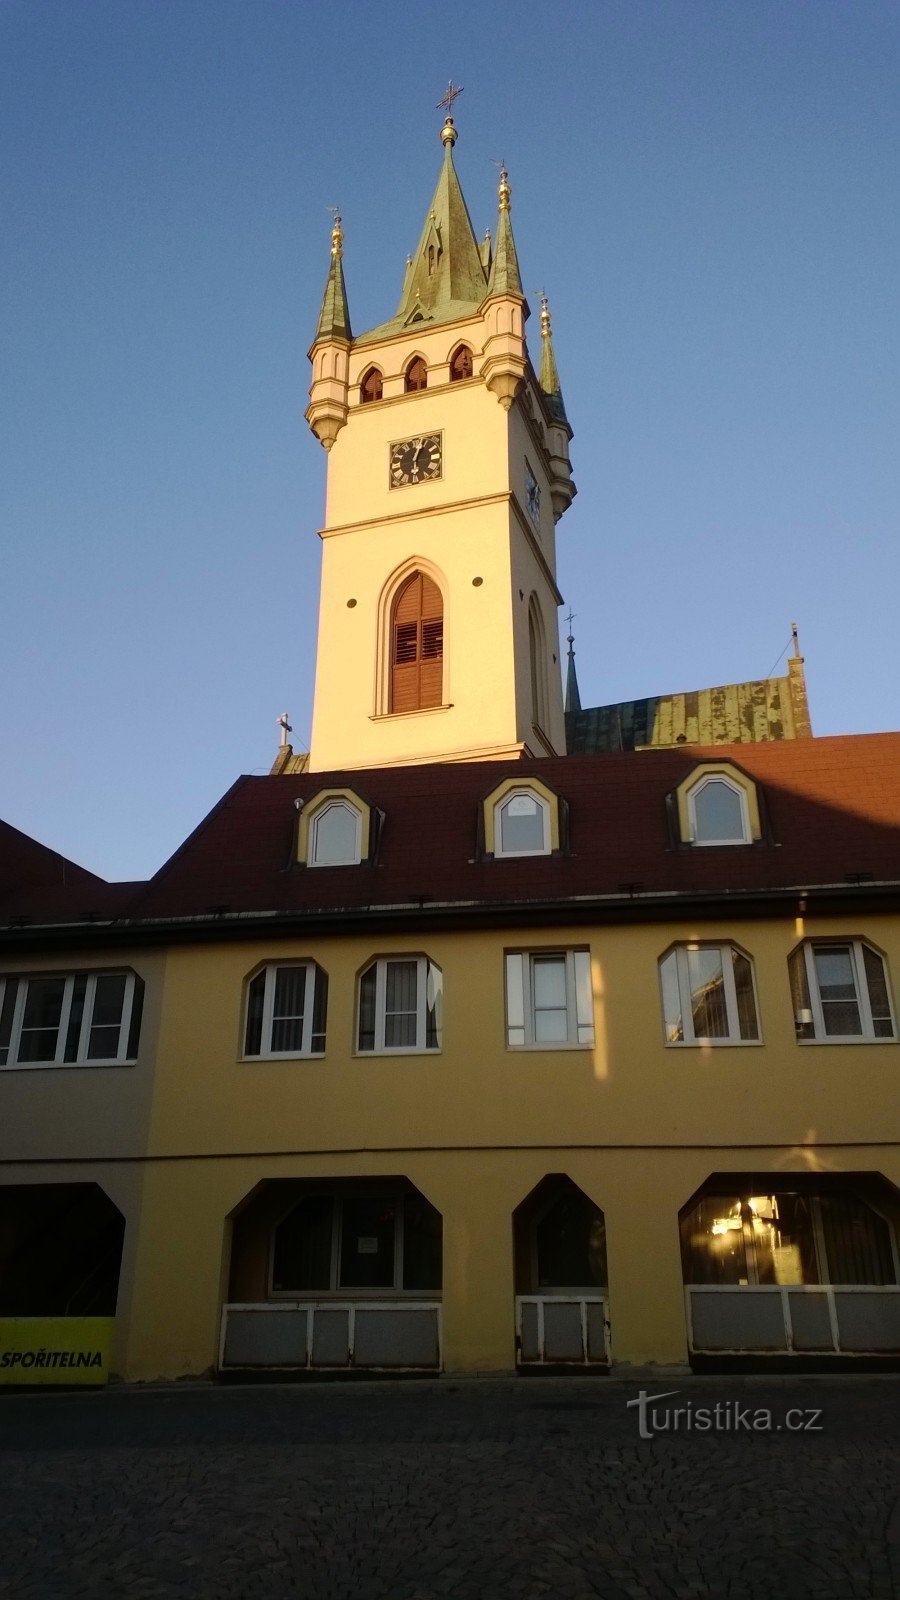 Turnul bisericii Sf. Nicolae.